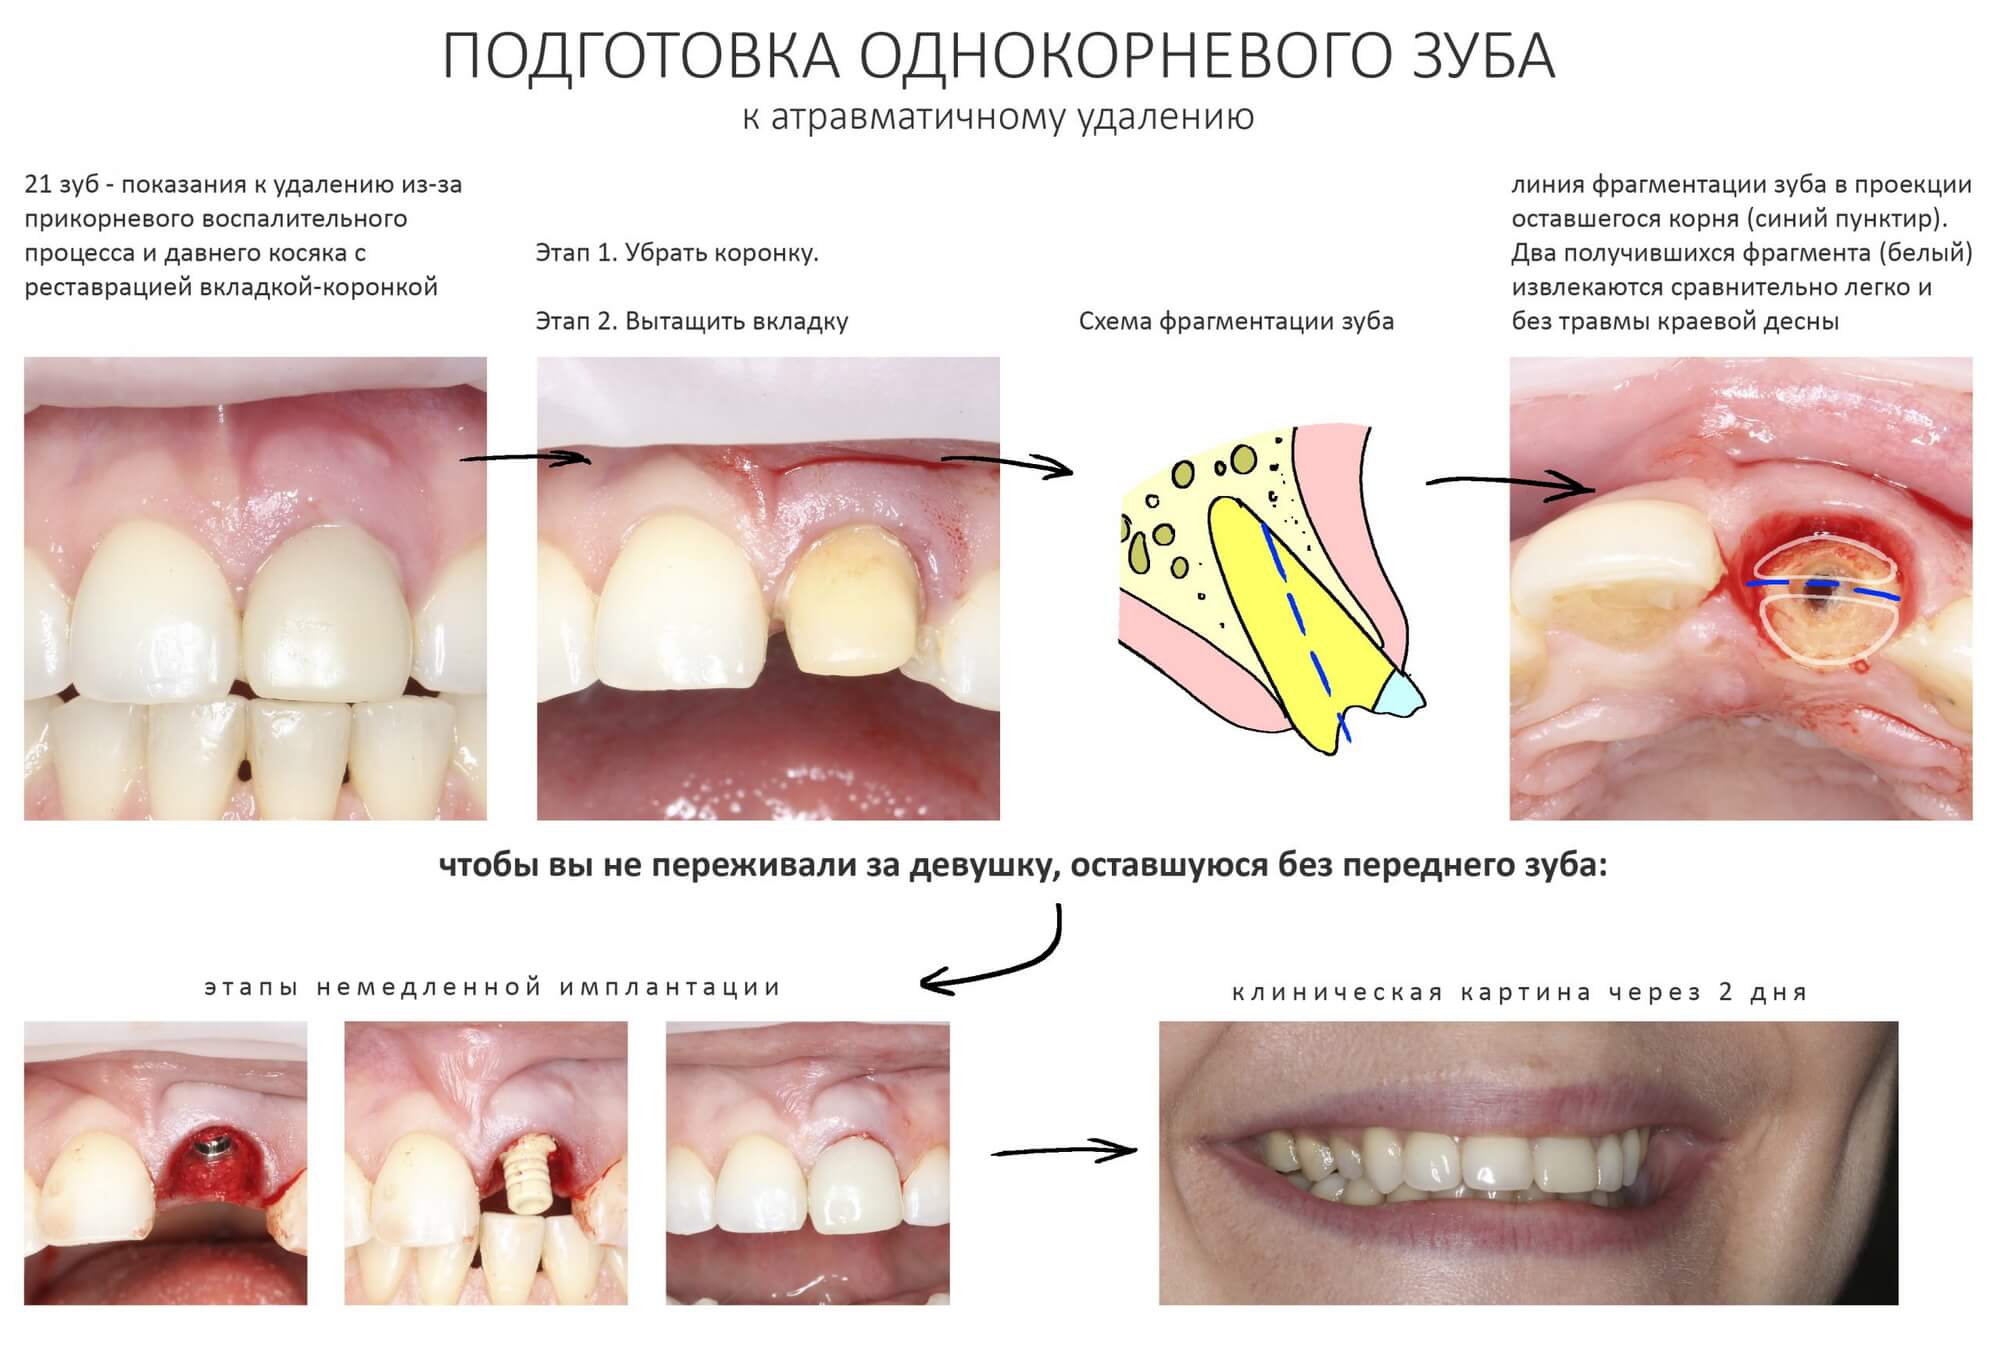 Вопросы по удалению зубов